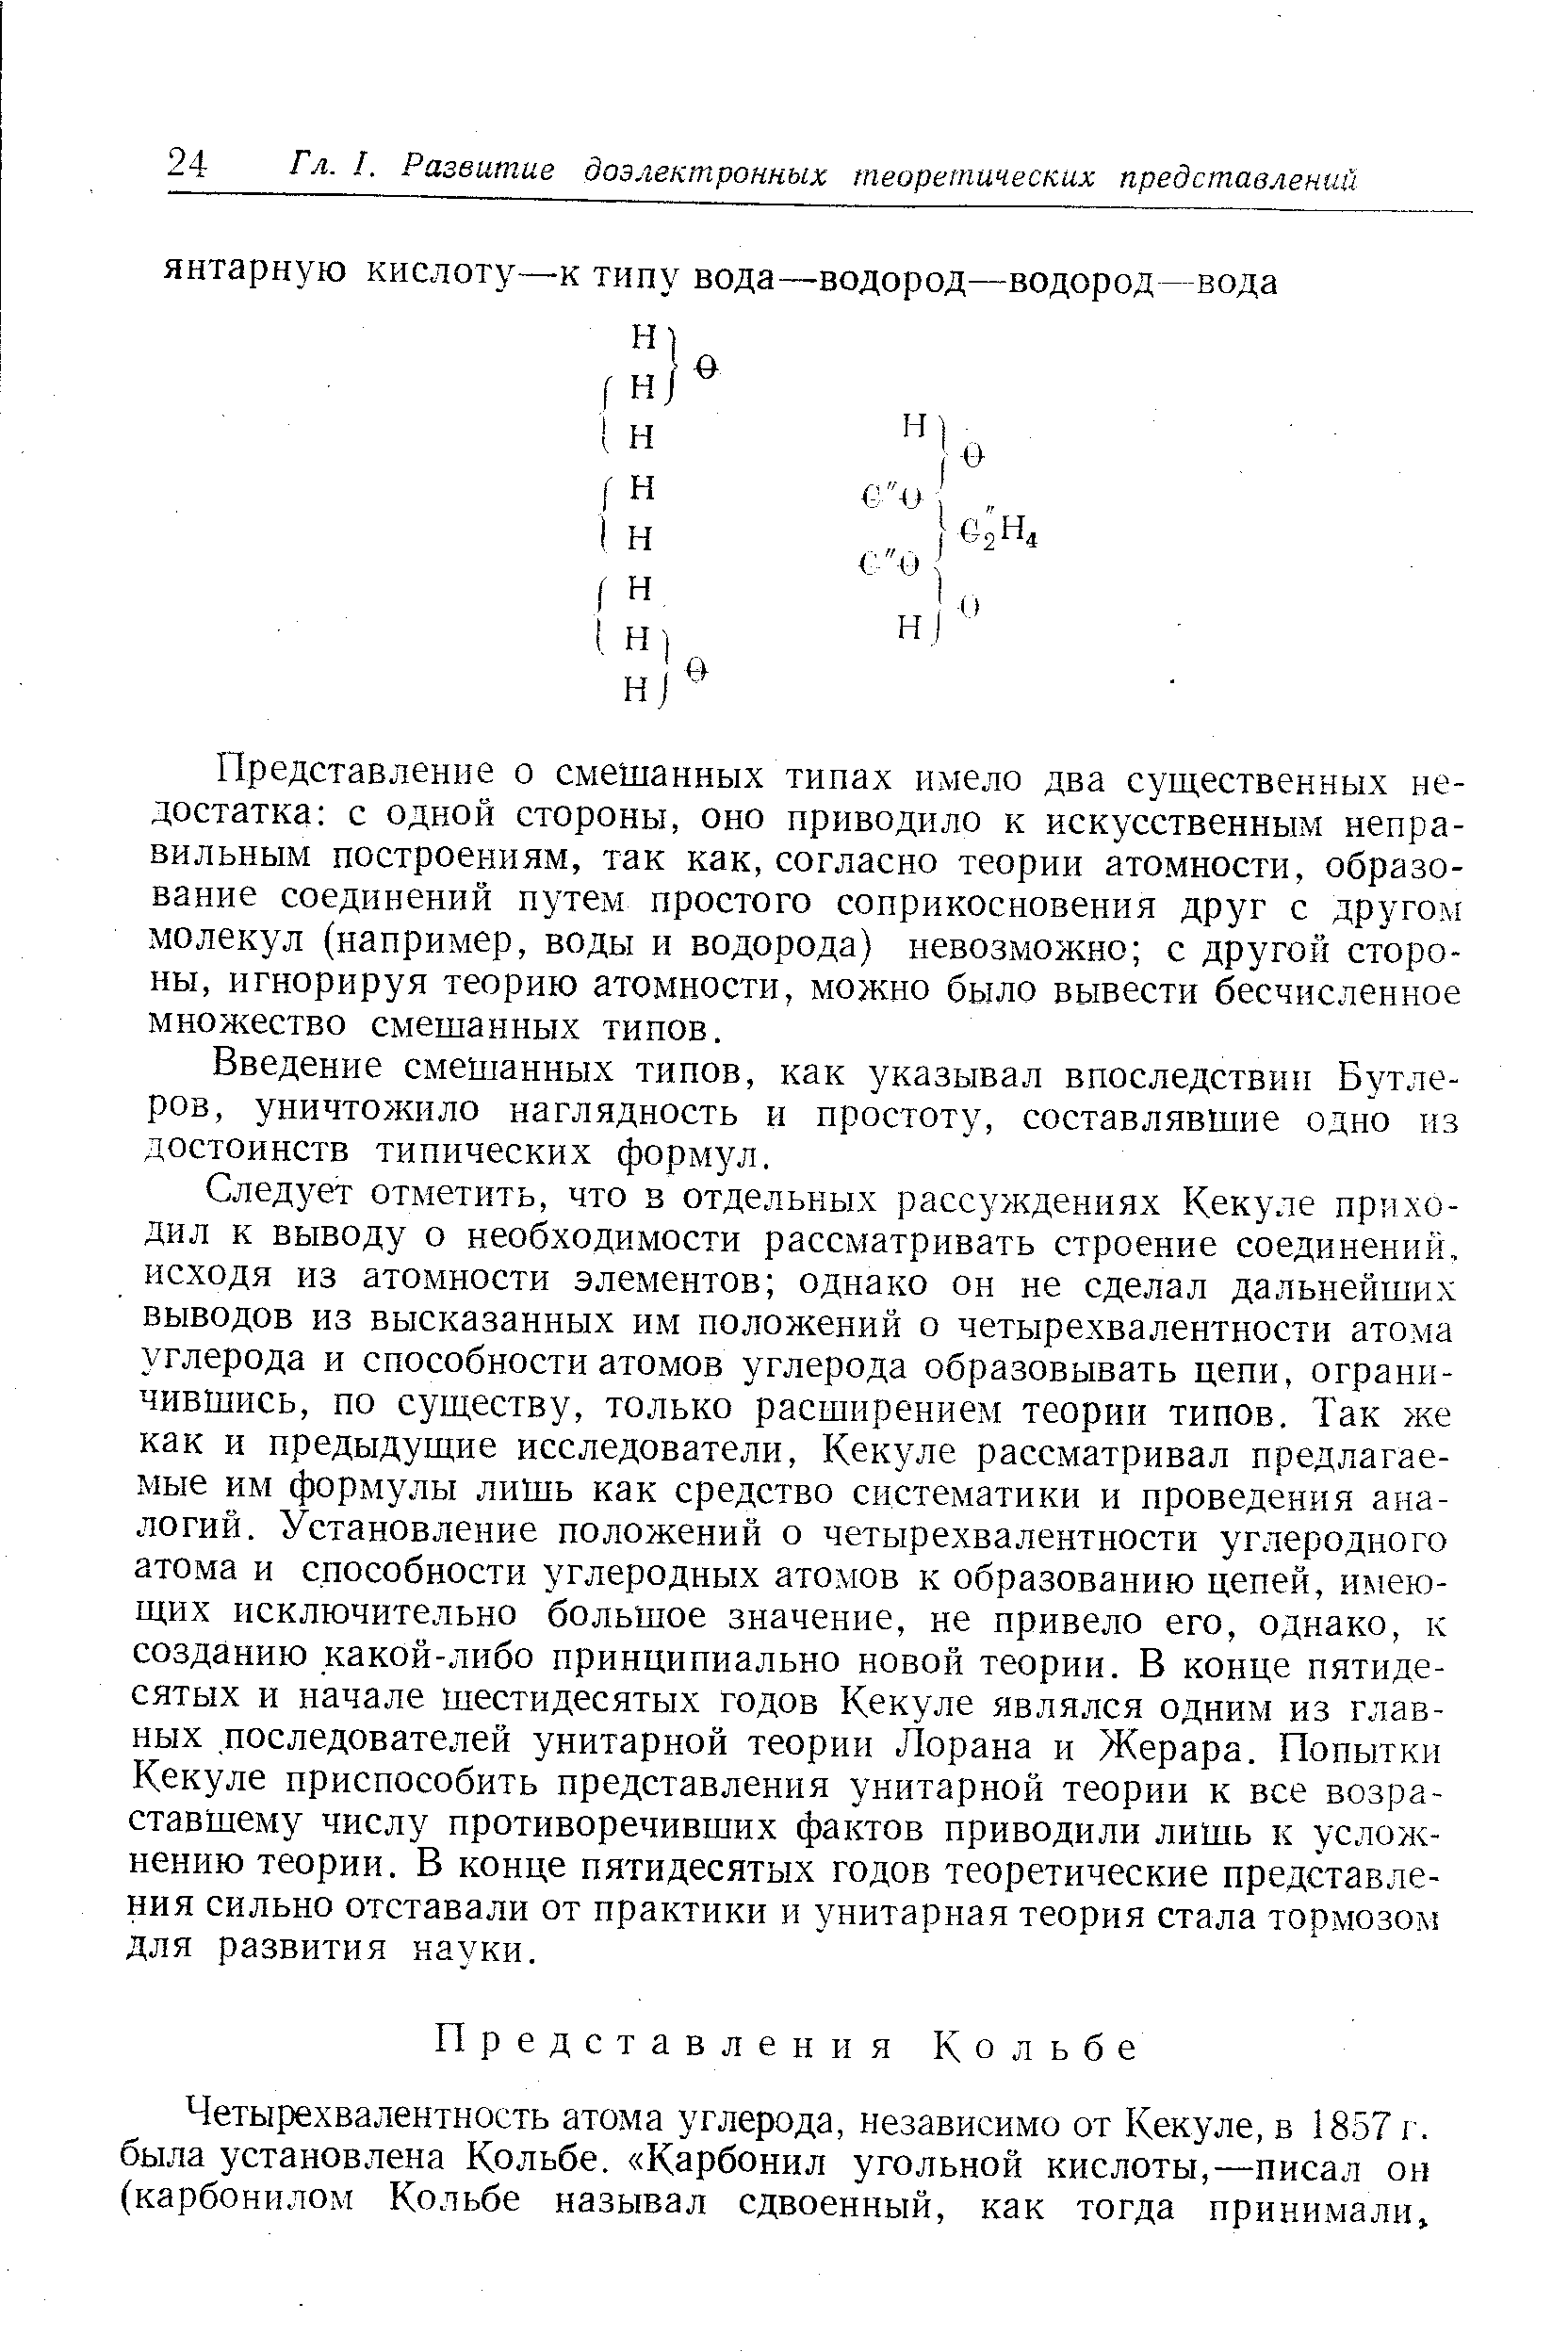 Введение смешанных типов, как указывал впоследствии Бутлеров, уничтожило наглядность и простоту, составлявшие одно нз достоинств типических формул.